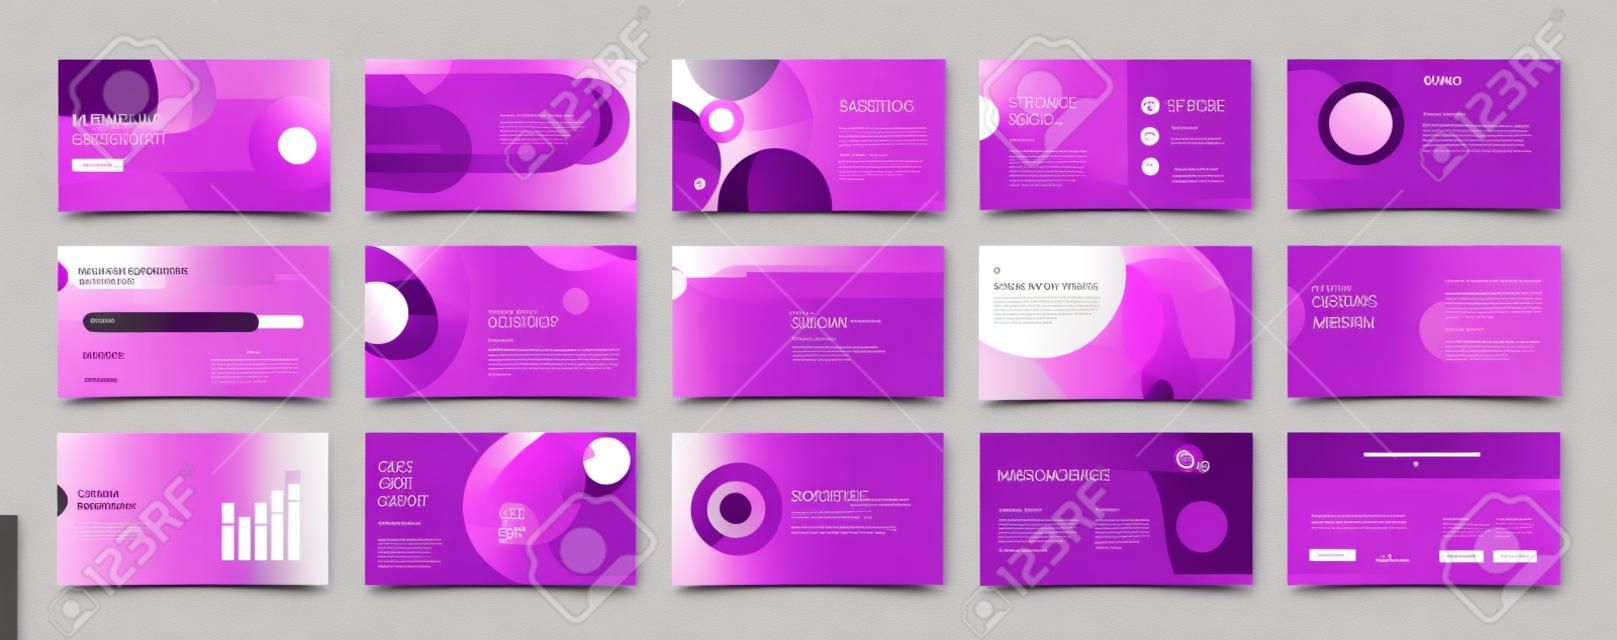 Geometric Purple Presentation Element Templates. Vector infographics. Voor gebruik in Presentatie, Flyer en Folder, SEO, Marketing, Webinar Landing Page Template, Website Design, Banner.